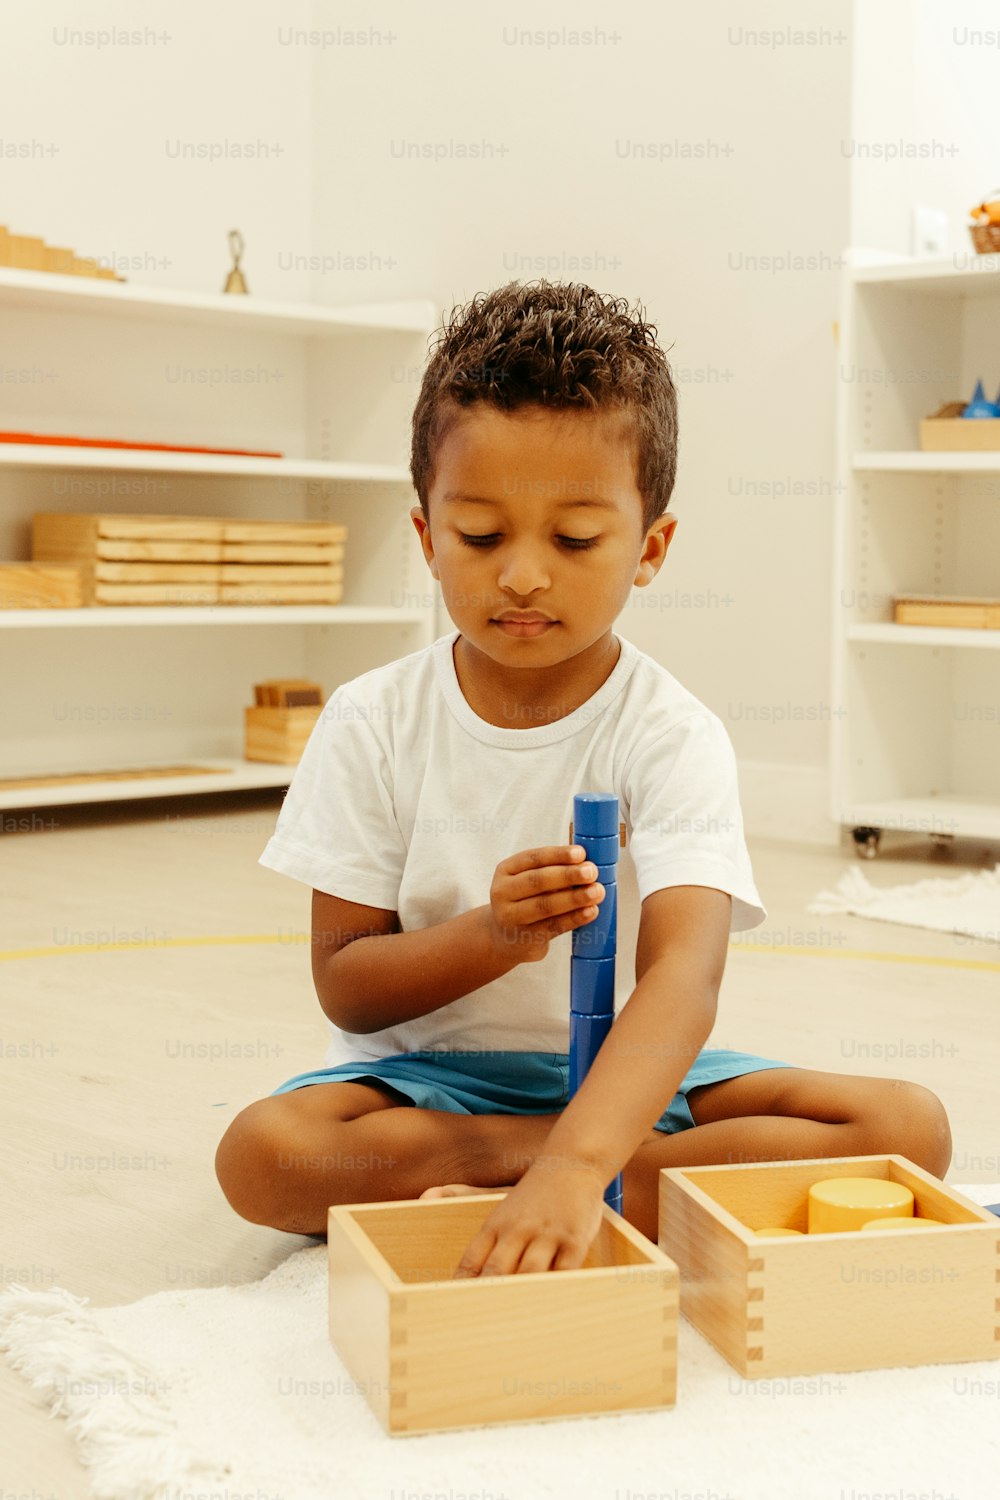 Un petit garçon assis par terre jouant avec une brosse à dents bleue